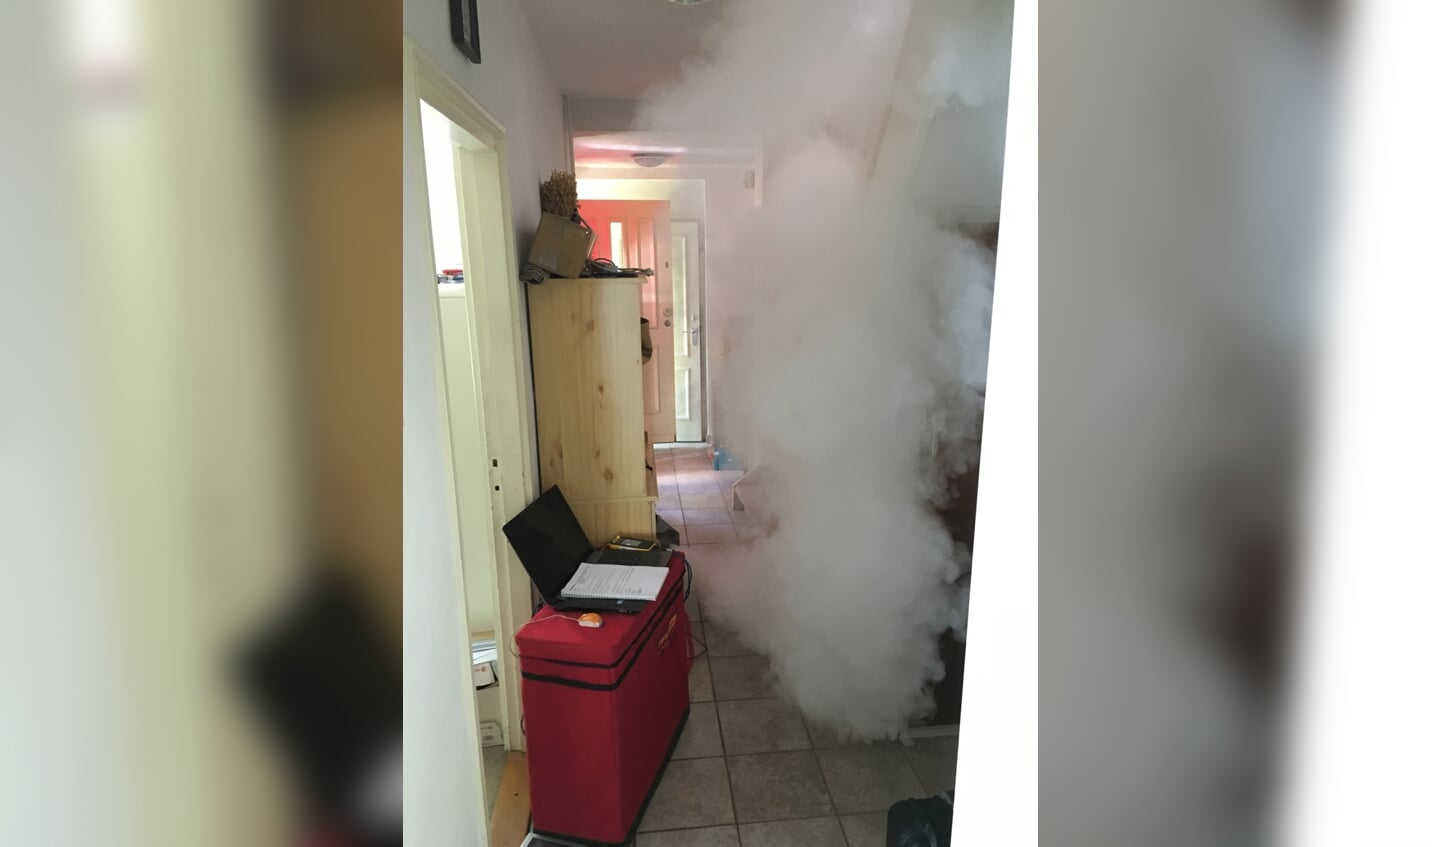 Het hele huis wordt volgeblazen met onschadelijke rook